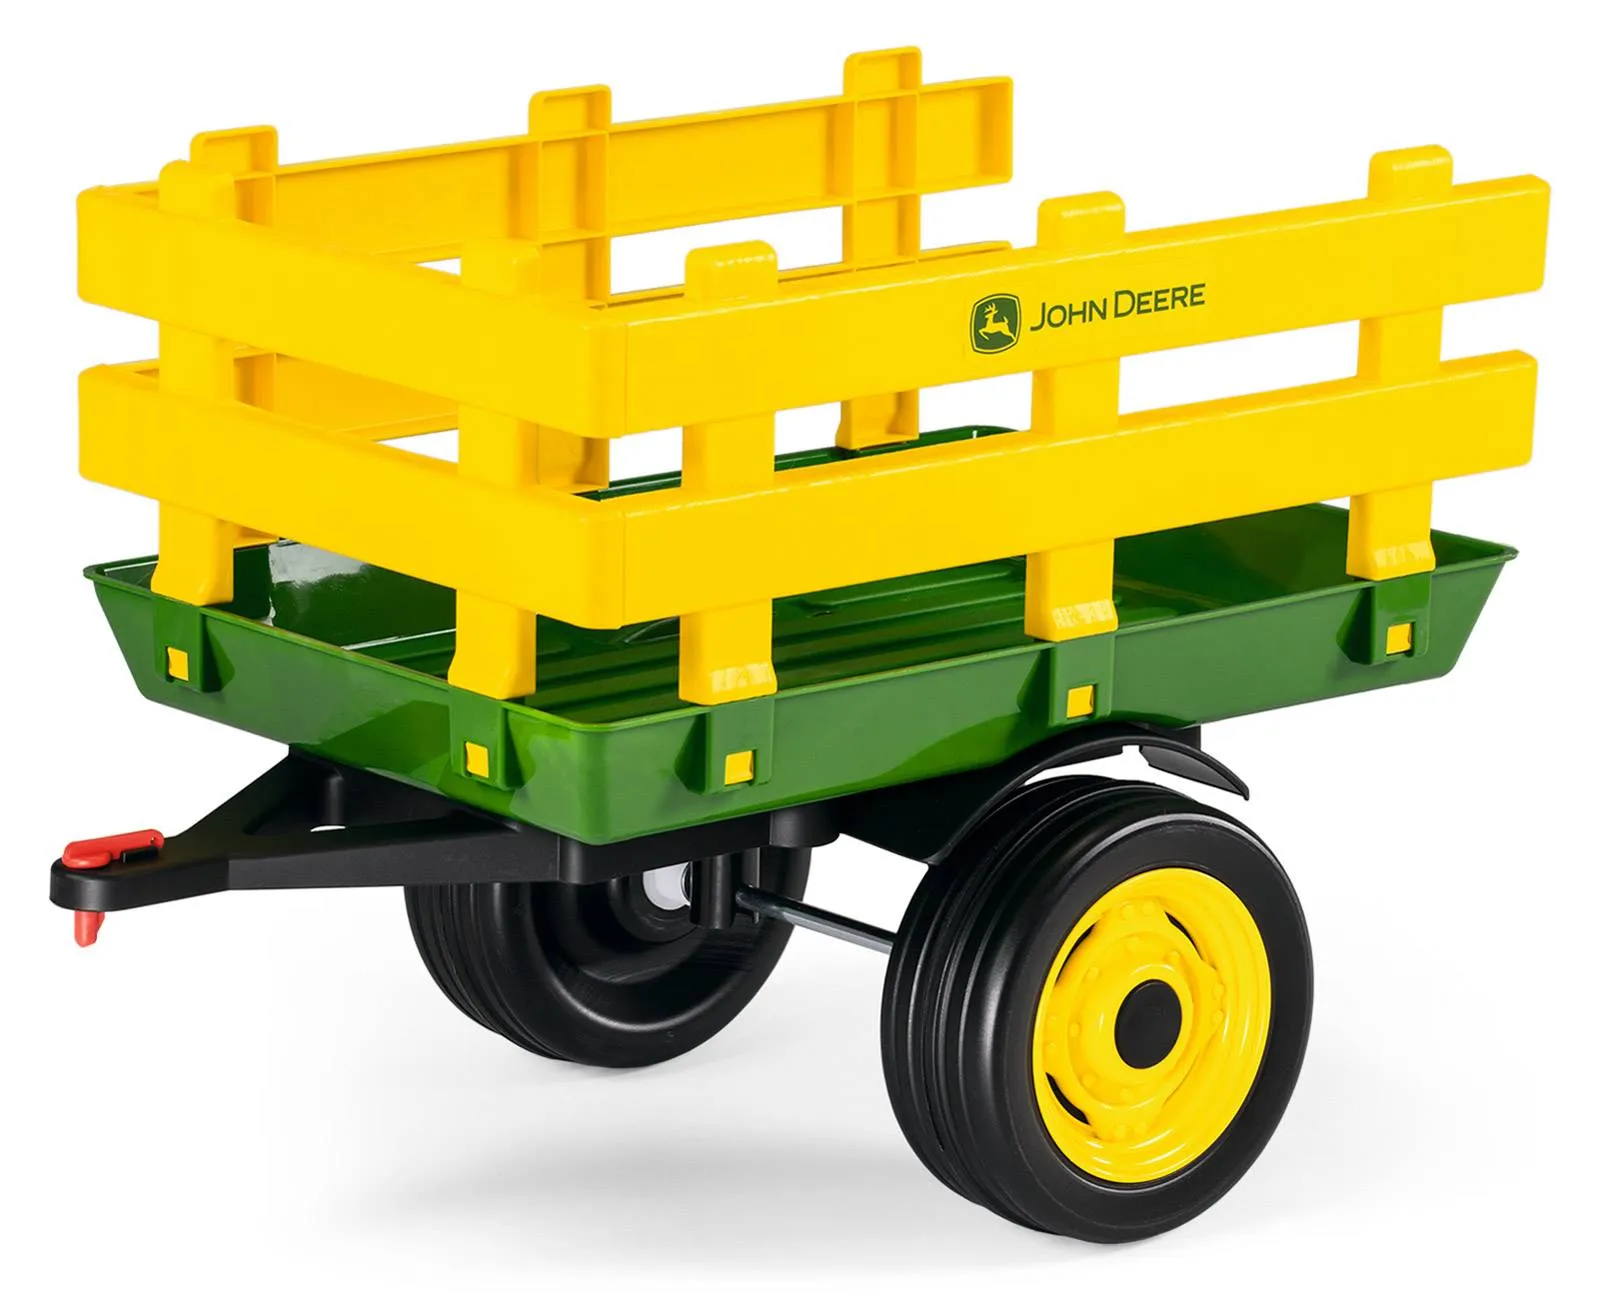 Adapter für rolly toys Anhänger, kompatibel mit Traktoren von Peg